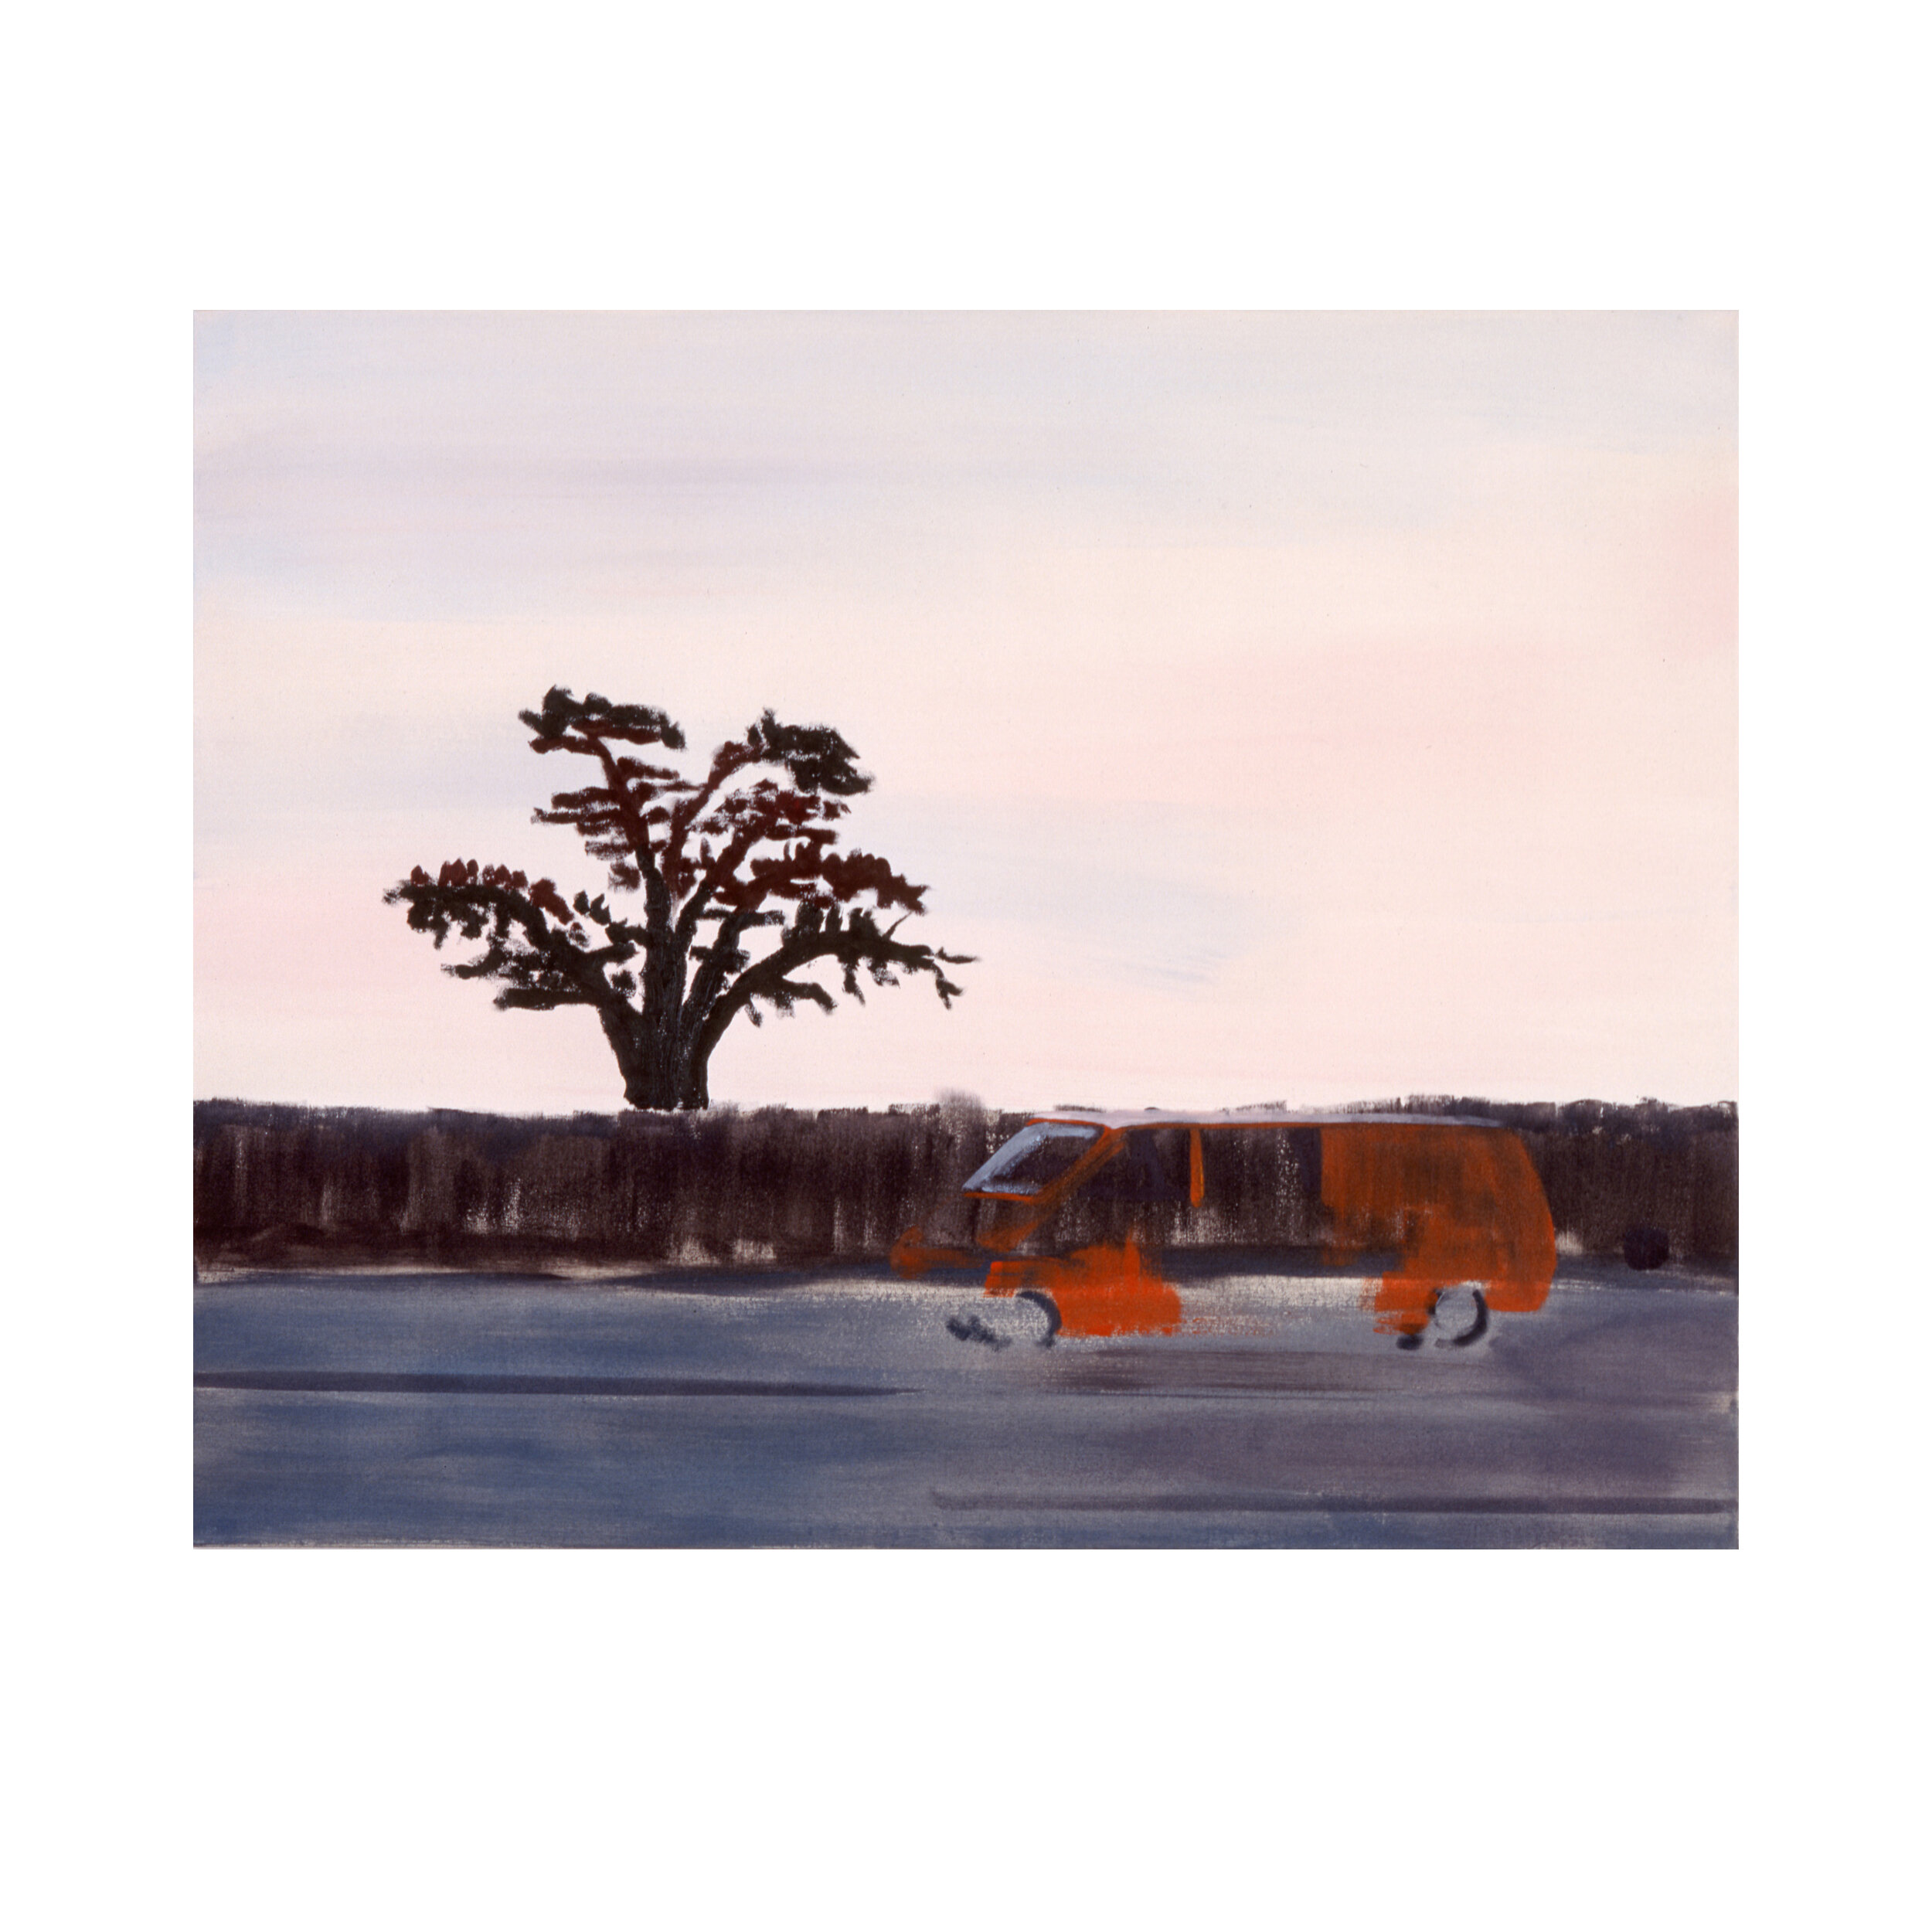  Autobus und Baum am Morgen3, 2002 85 x 110 cm, Acryl auf Baumwolle Foto: W.Günzel 